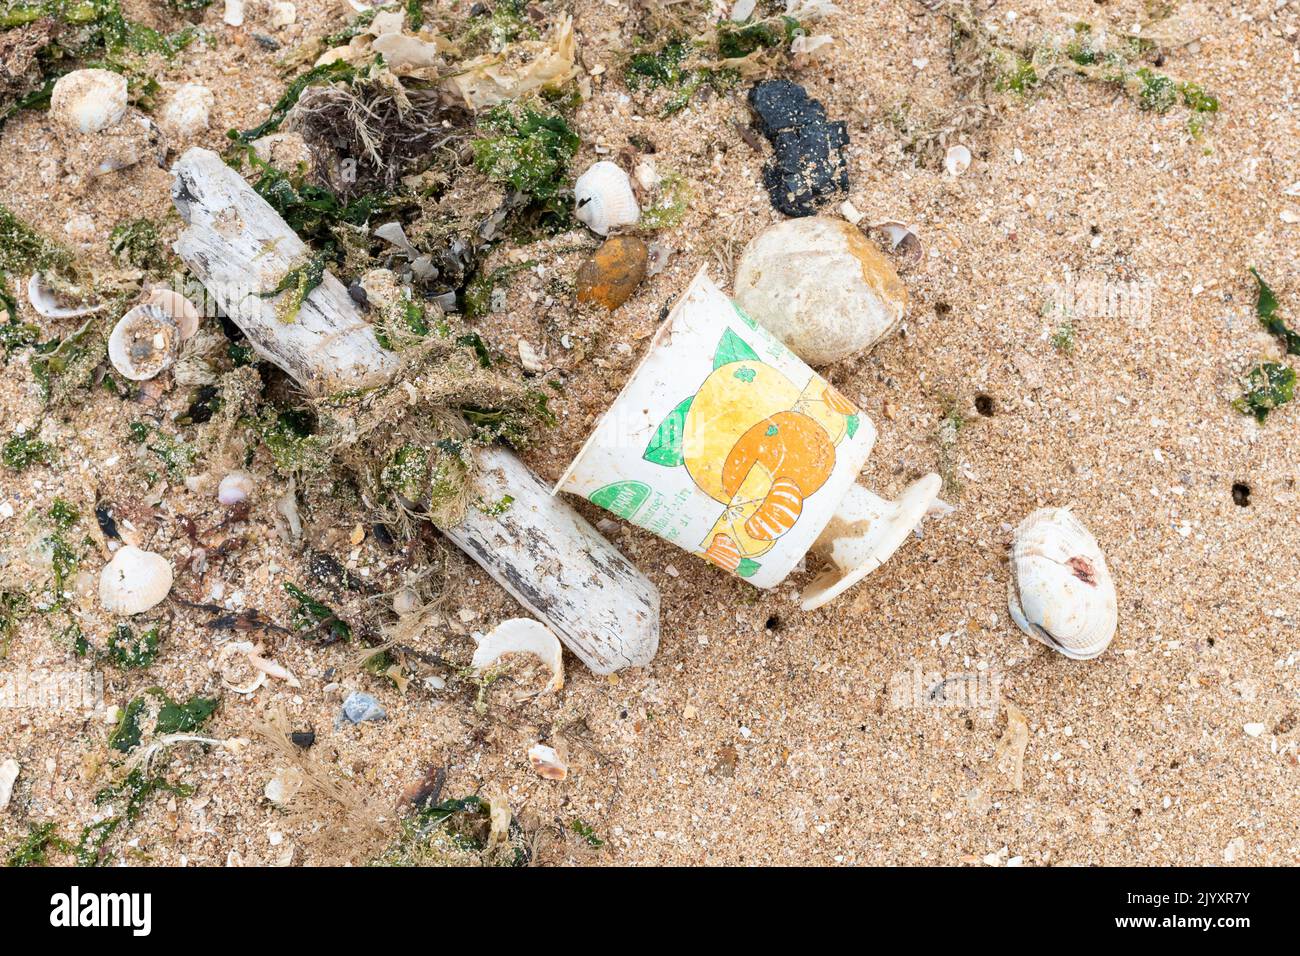 Contaminación de plástico reino unido - un solo uso de envases de alimentos de plástico lavado en la playa - décadas de edad 'Postres granja yogur' olla encontrado en la playa en 2022 - Inglaterra, Foto de stock